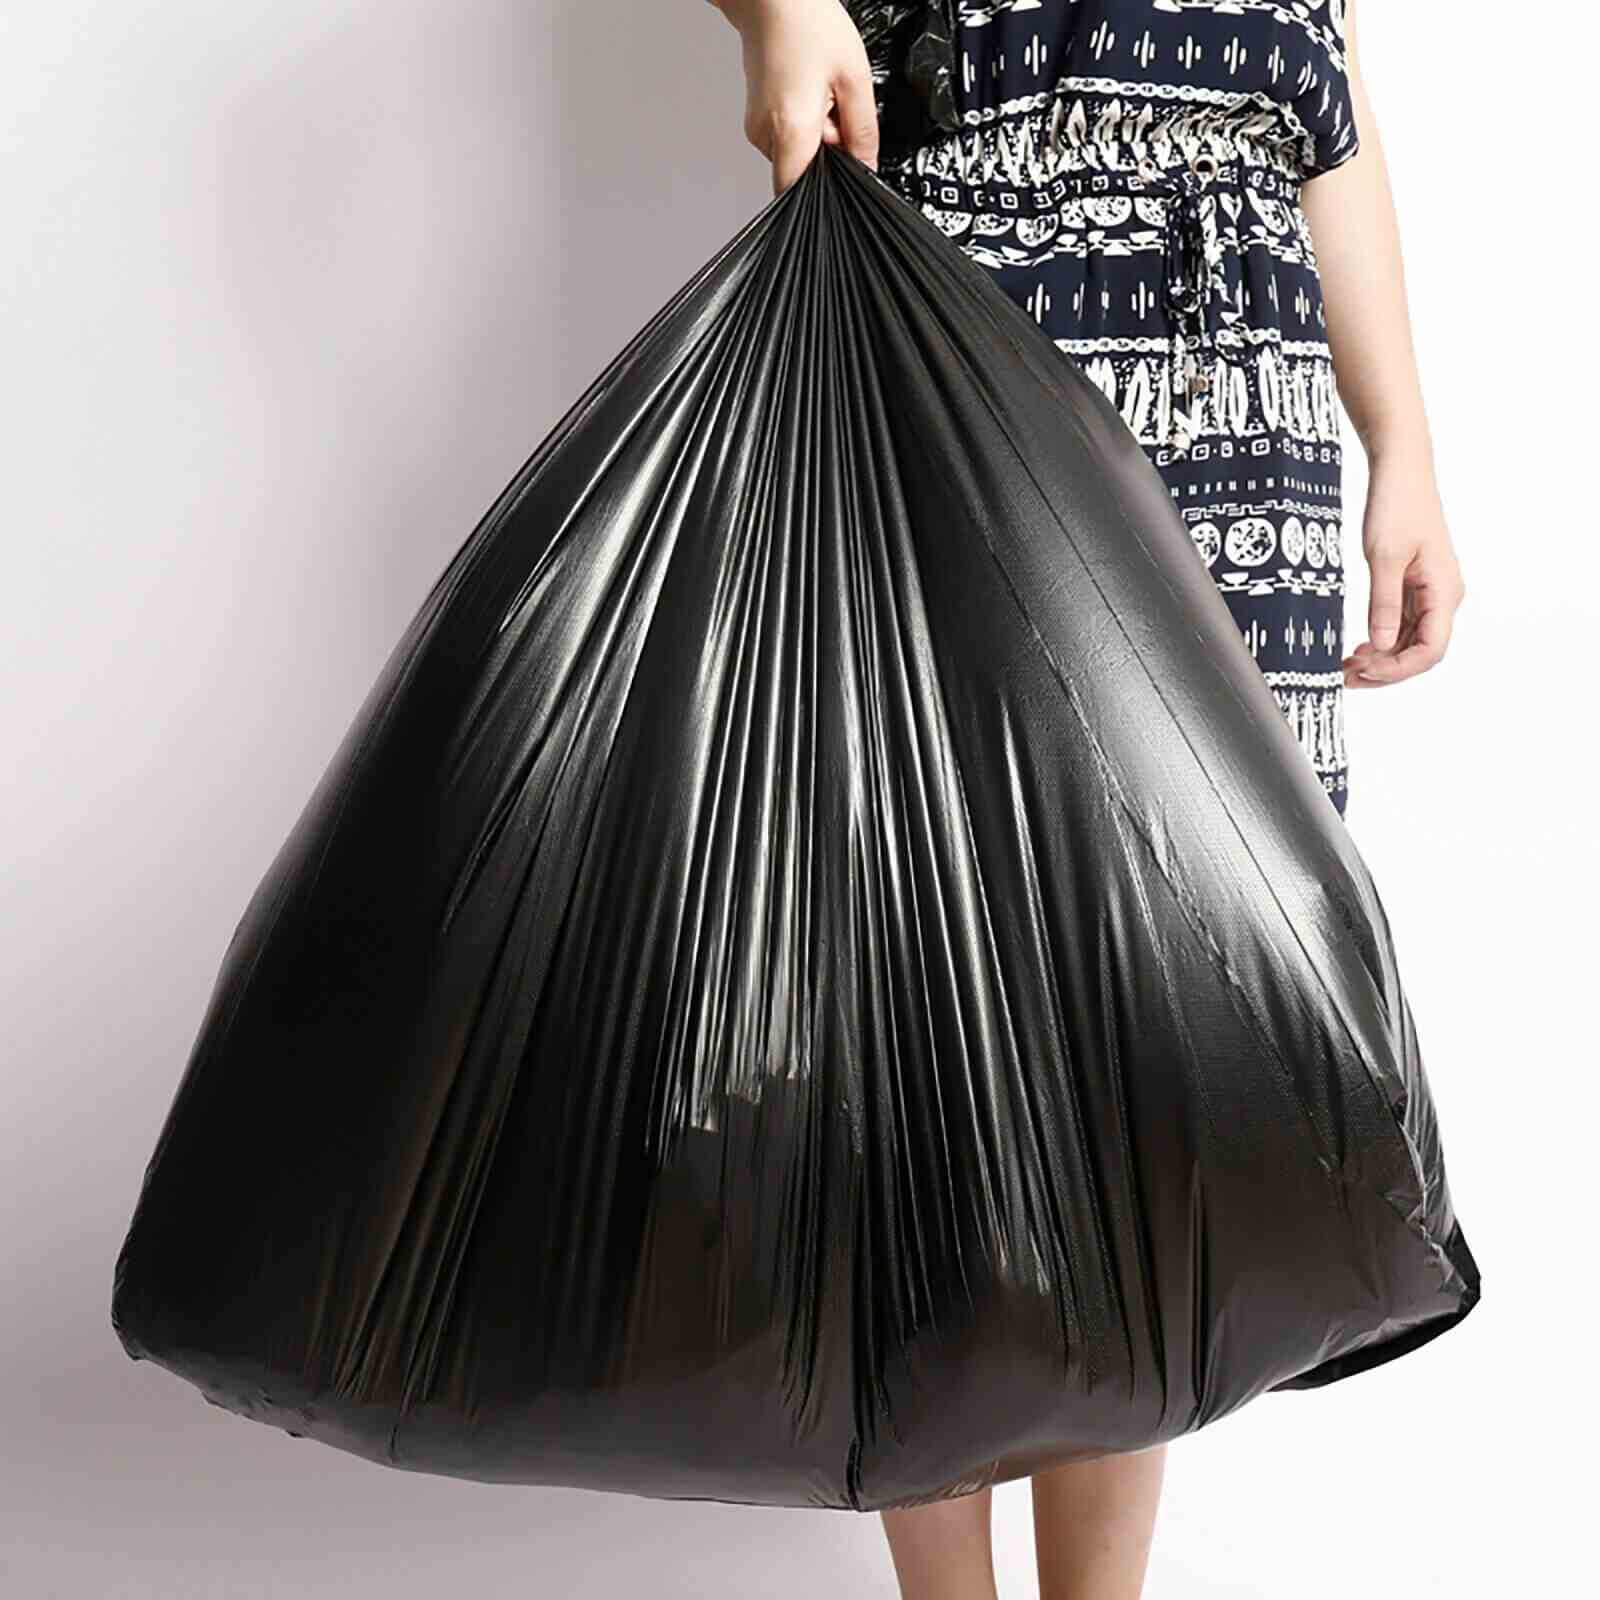 https://bcbmall.com/cdn/shop/products/50Pcs-Heavy-Duty-Large-Black-Trash-Bags-60-Gallon_12.jpg?v=1650532910